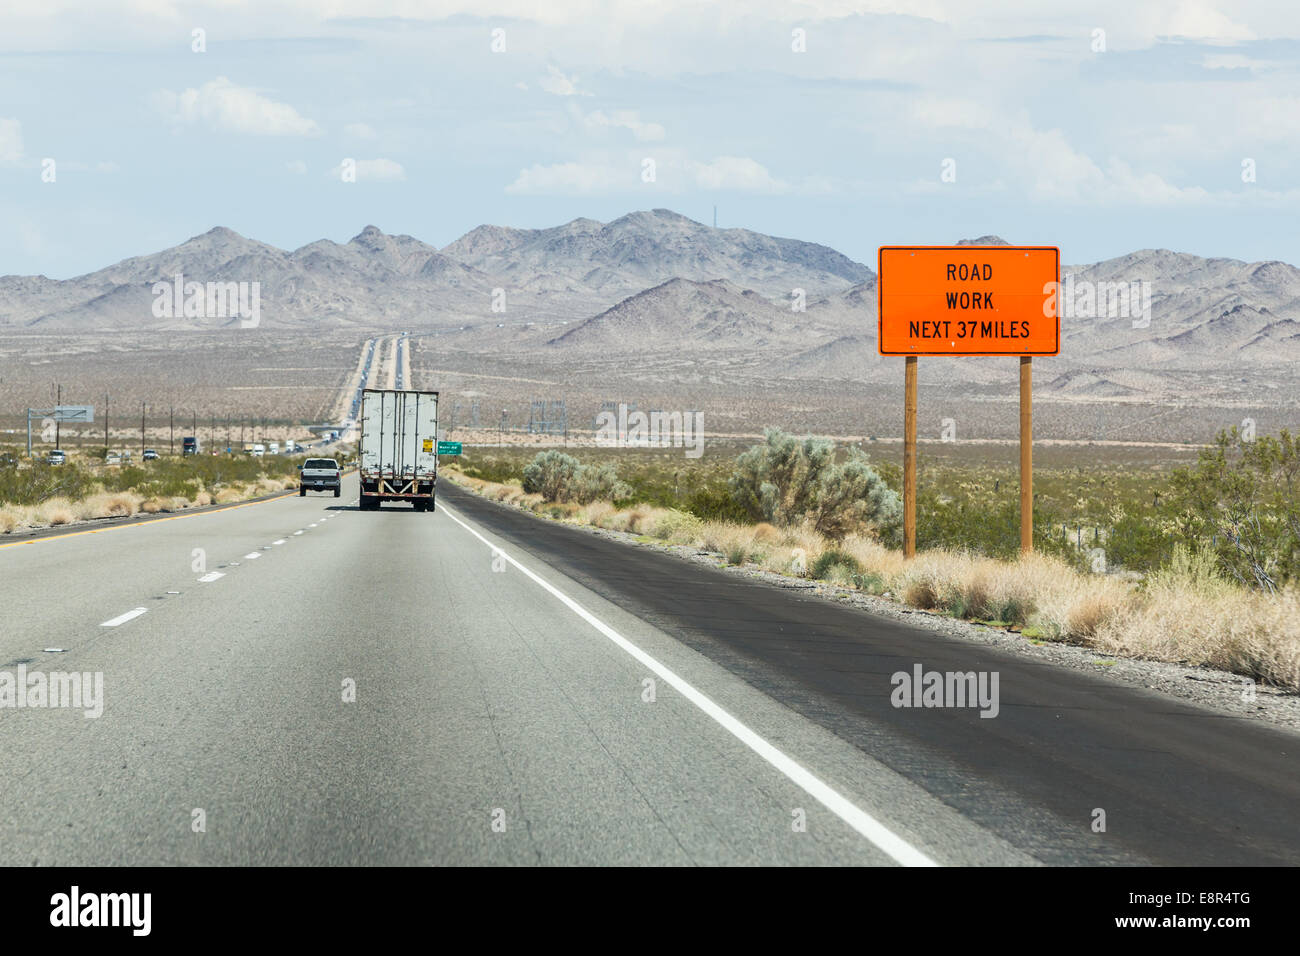 Anmeldung "Straße Arbeit nächste 37 Meilen" auf der Straße in Kalifornien, USA Stockfoto